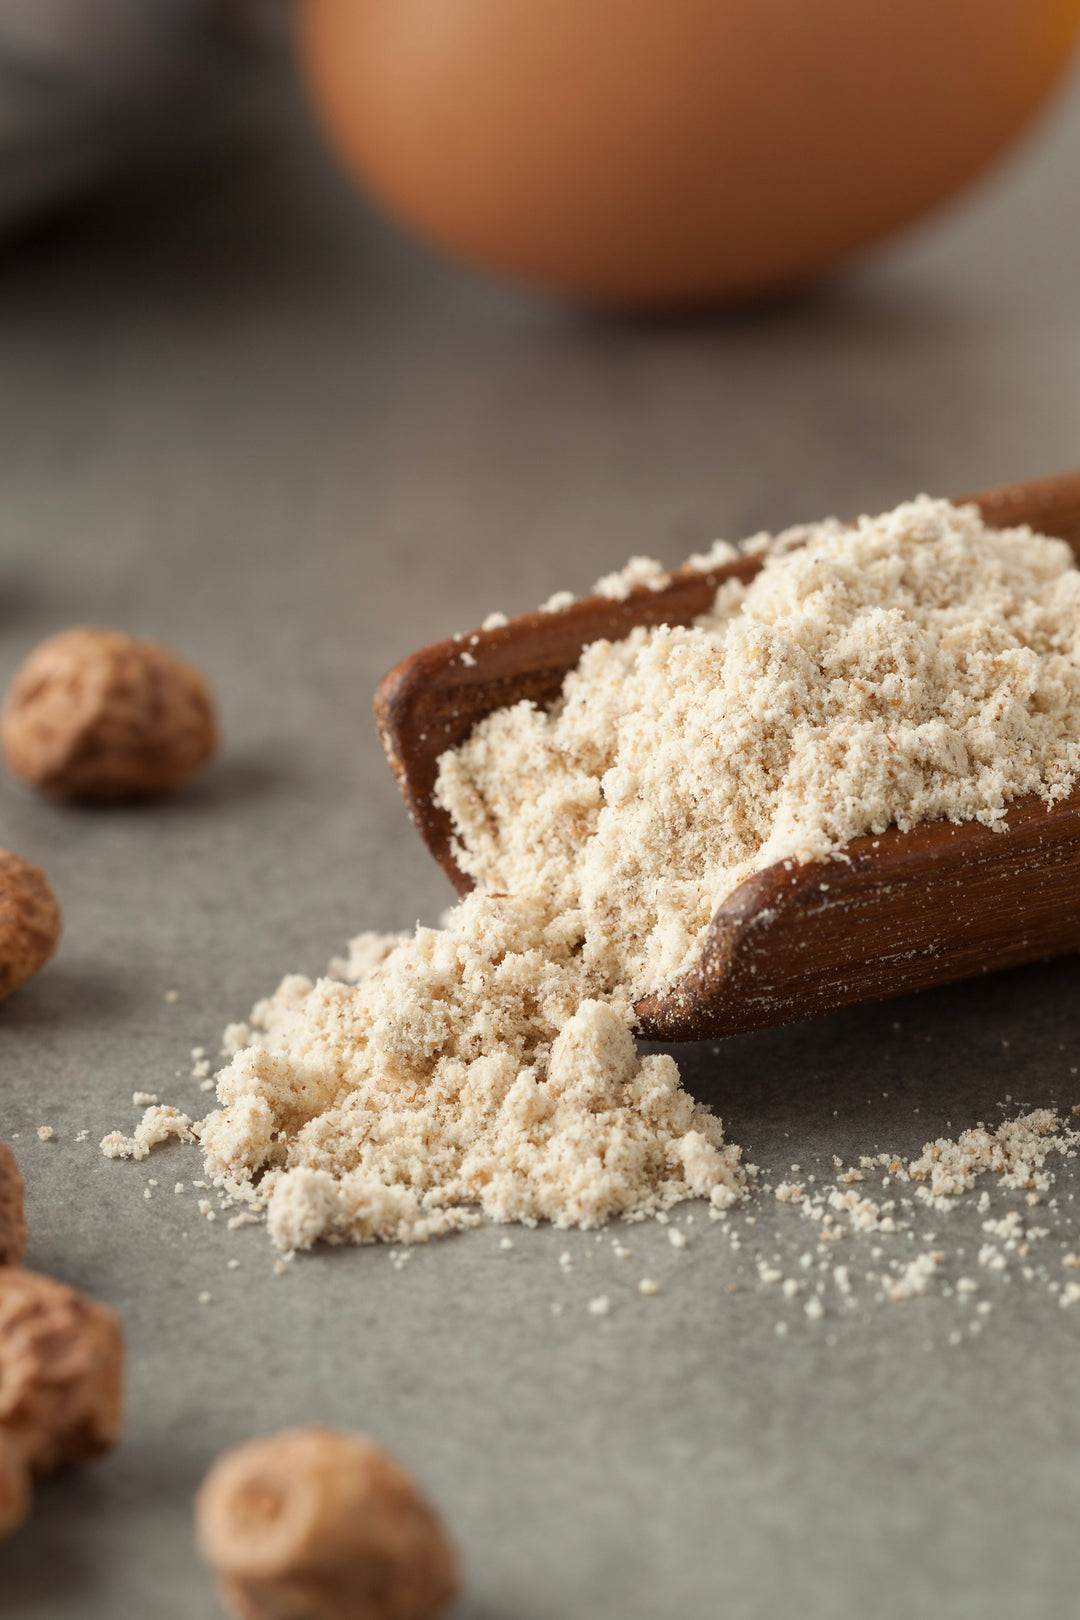 קמח אגוזי נמר - ללא גלוטן ומתאים לרגישים לאגוזים וצליאקים